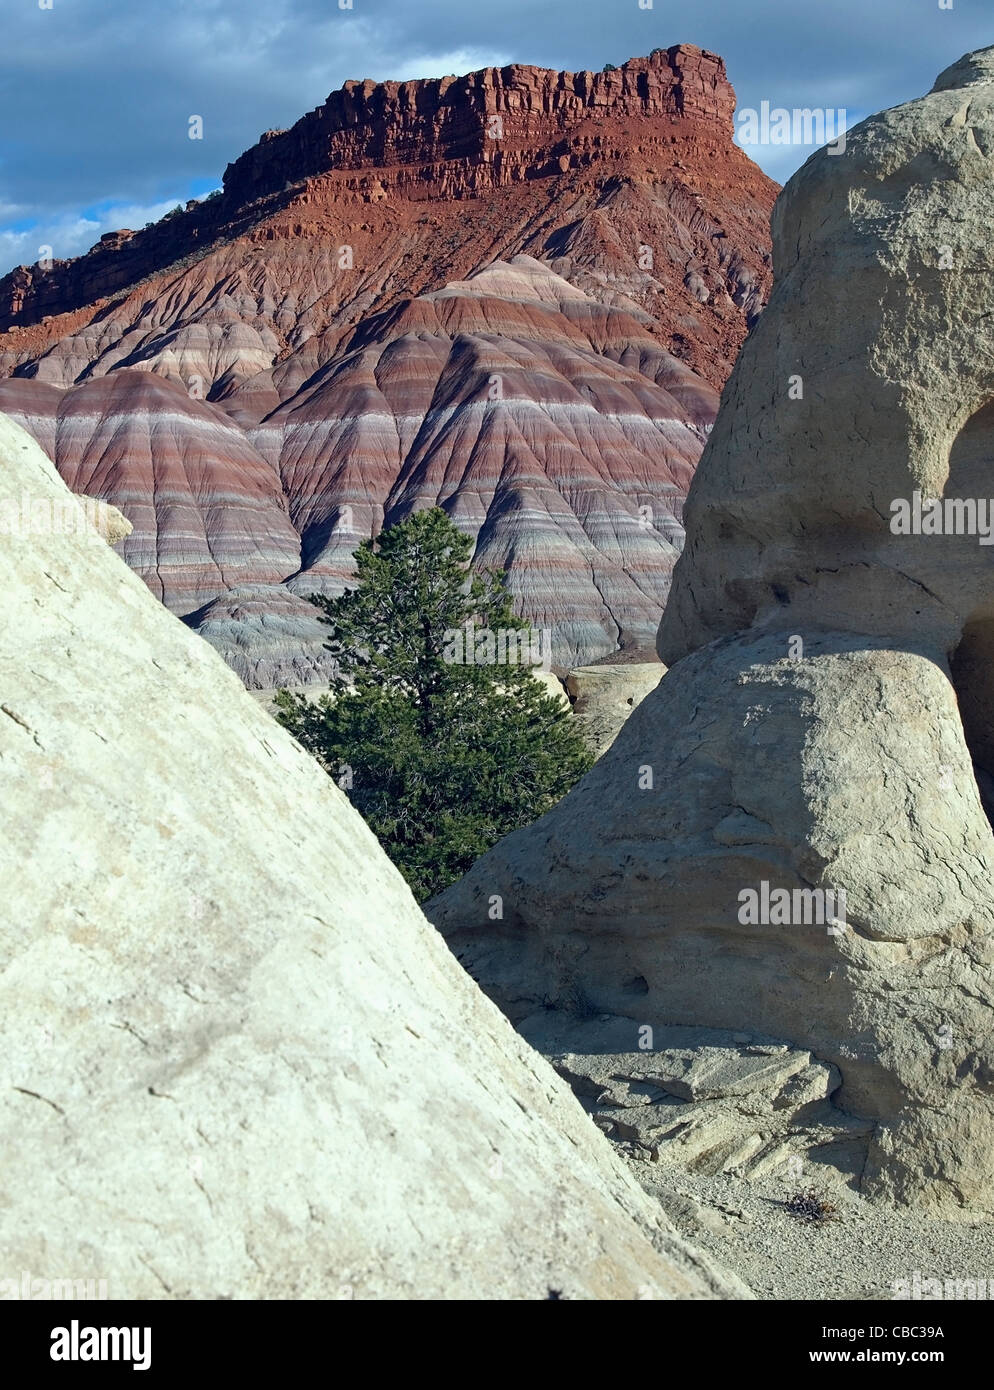 Die Pinyon-Kiefer wächst auf Sandstein in der Wüste. Stockfoto